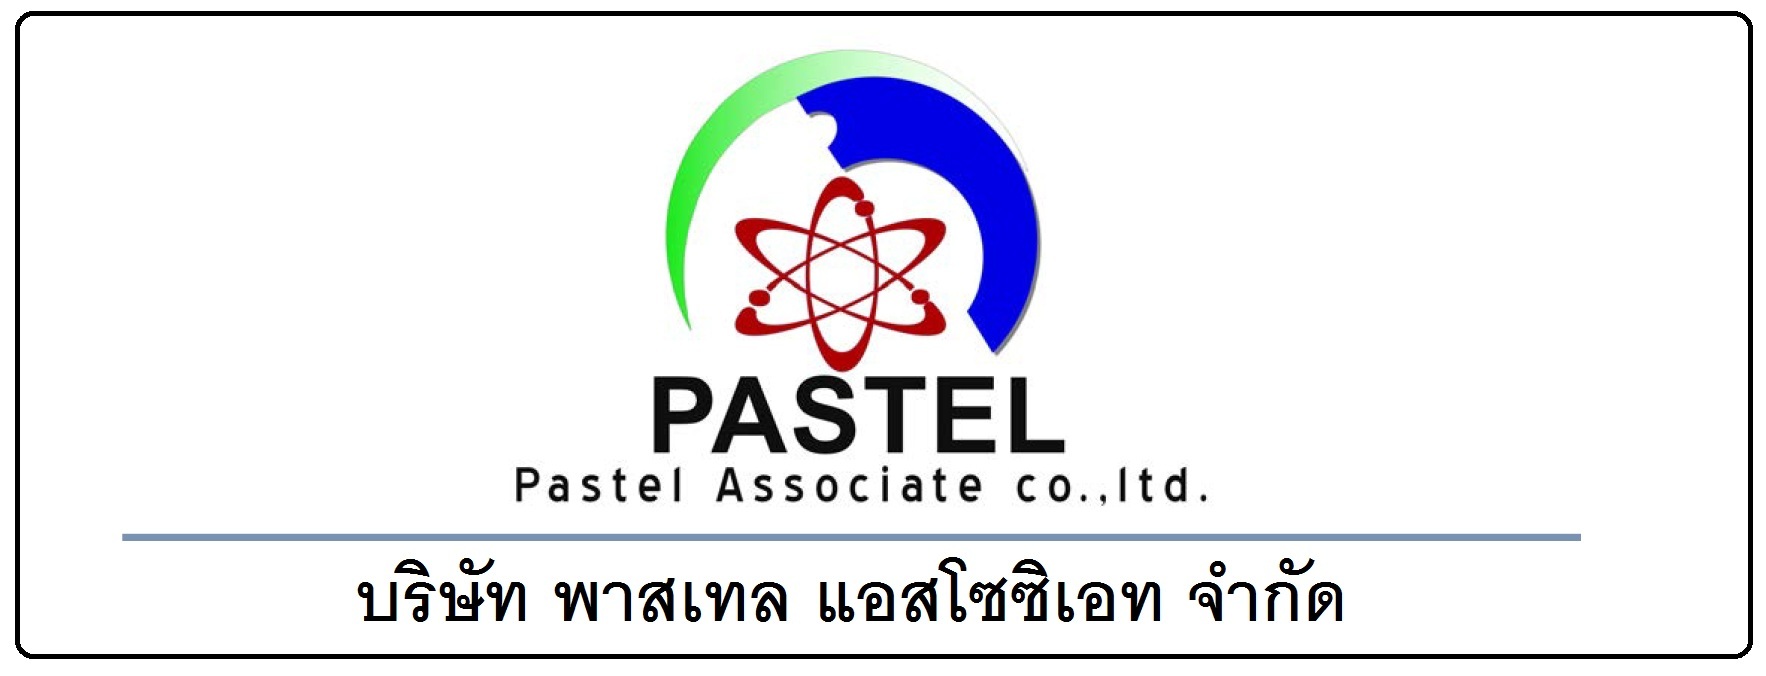 PASTEL ASSOCIATE CO.,LTD., บริษัท พาสเทล แอสโซซิเอท จำกัด